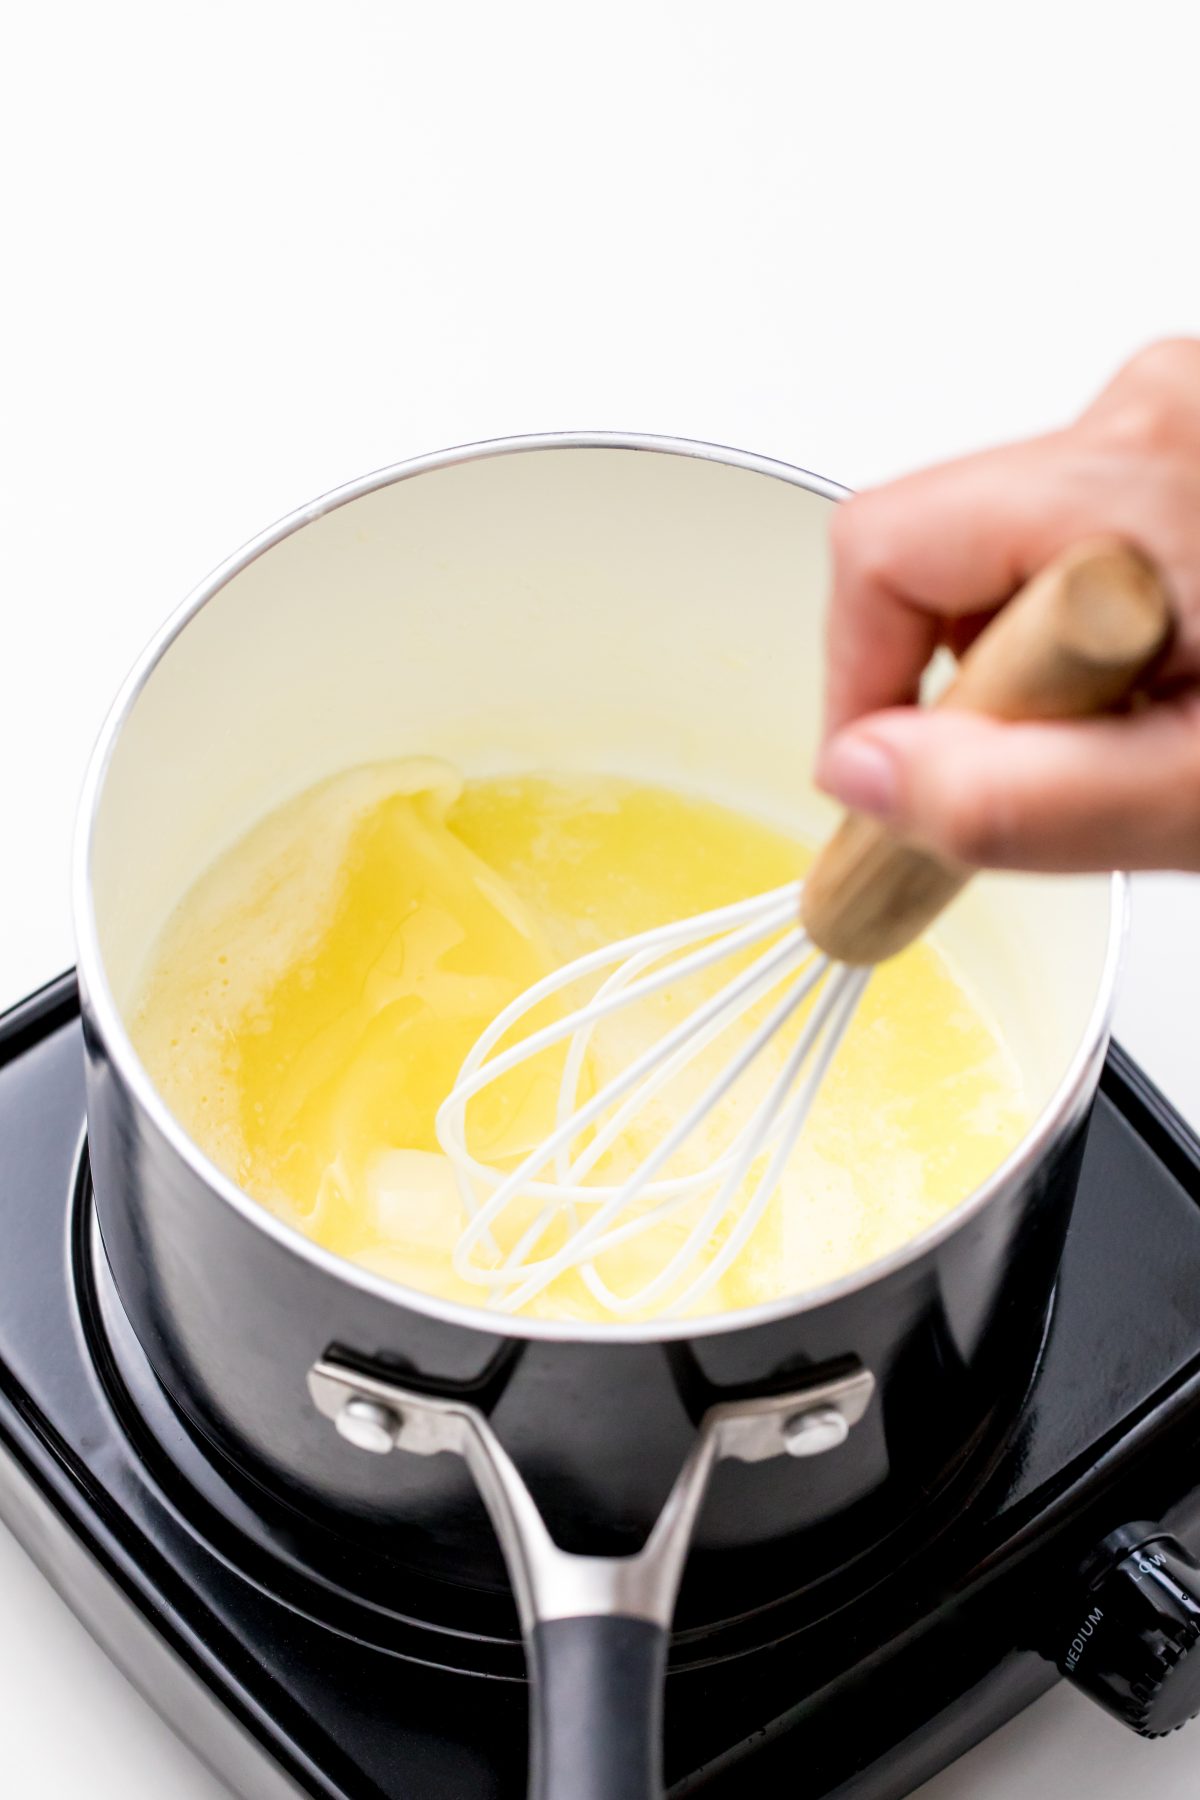 Melt butter in a saucepan.